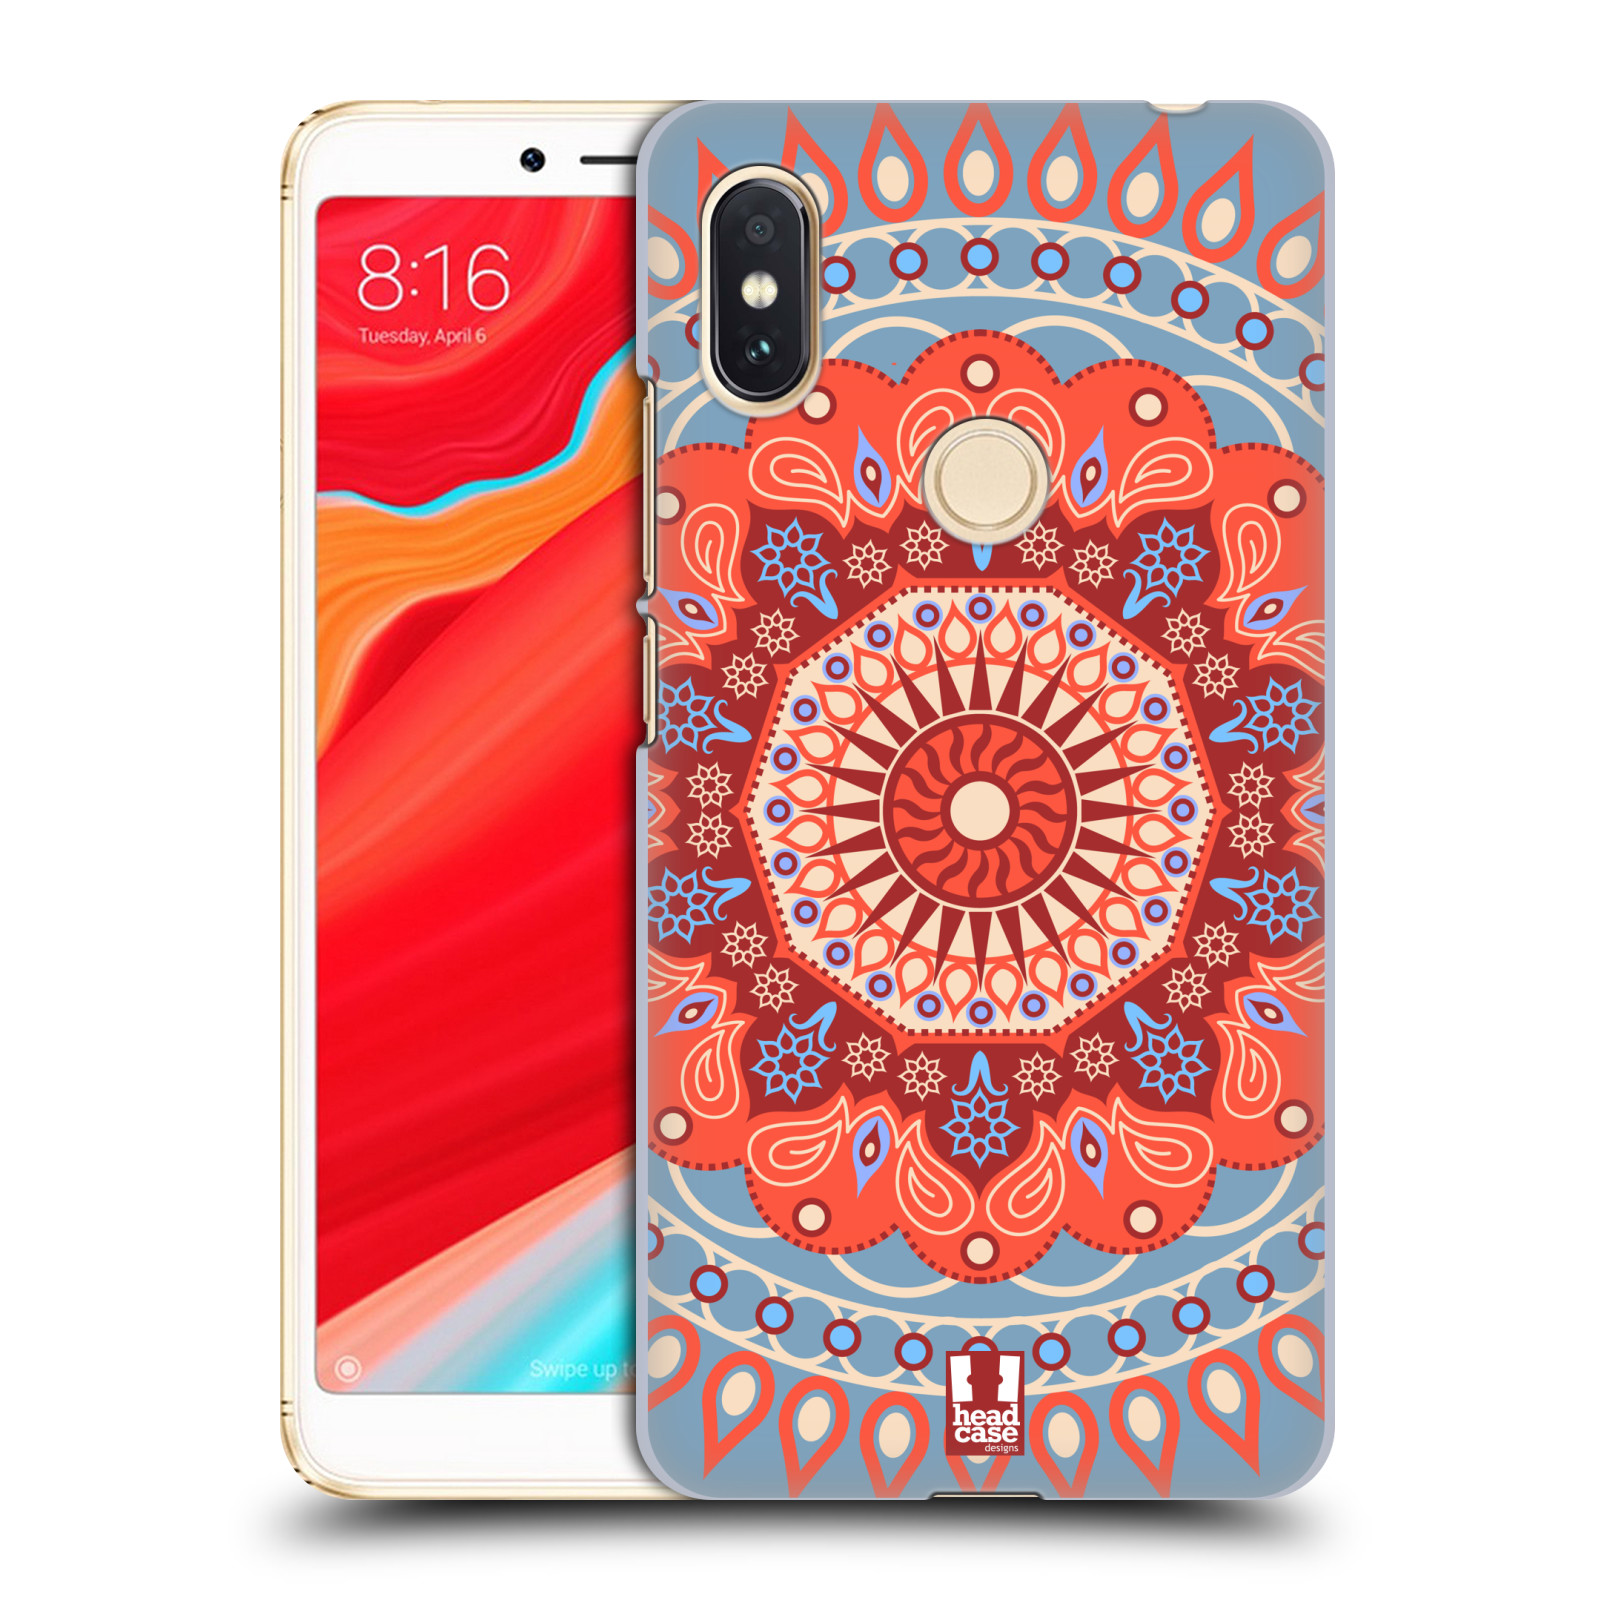 HEAD CASE plastový obal na mobil Xiaomi Redmi S2 vzor Indie Mandala slunce barevný motiv ČERVENÁ A MODRÁ